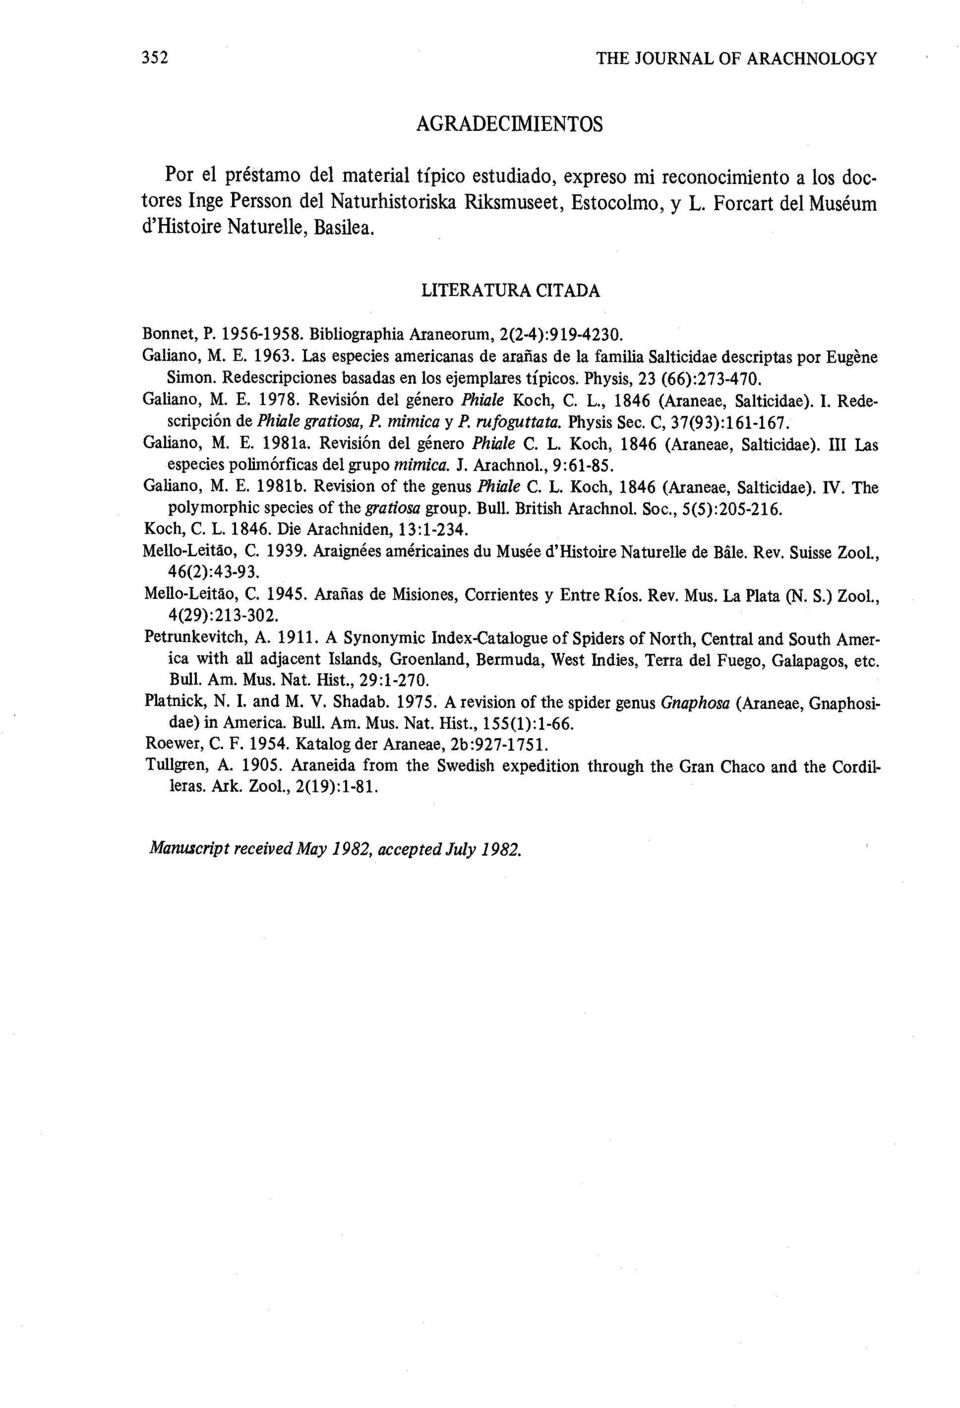 Las especies americanas de areas de la familia Salticidae descriptas por Eugen e Simon. Redescripciones basadas en los ejemplares tipicos. Physis, 23 (66) :273-470. Galiano, M. E. 1978.